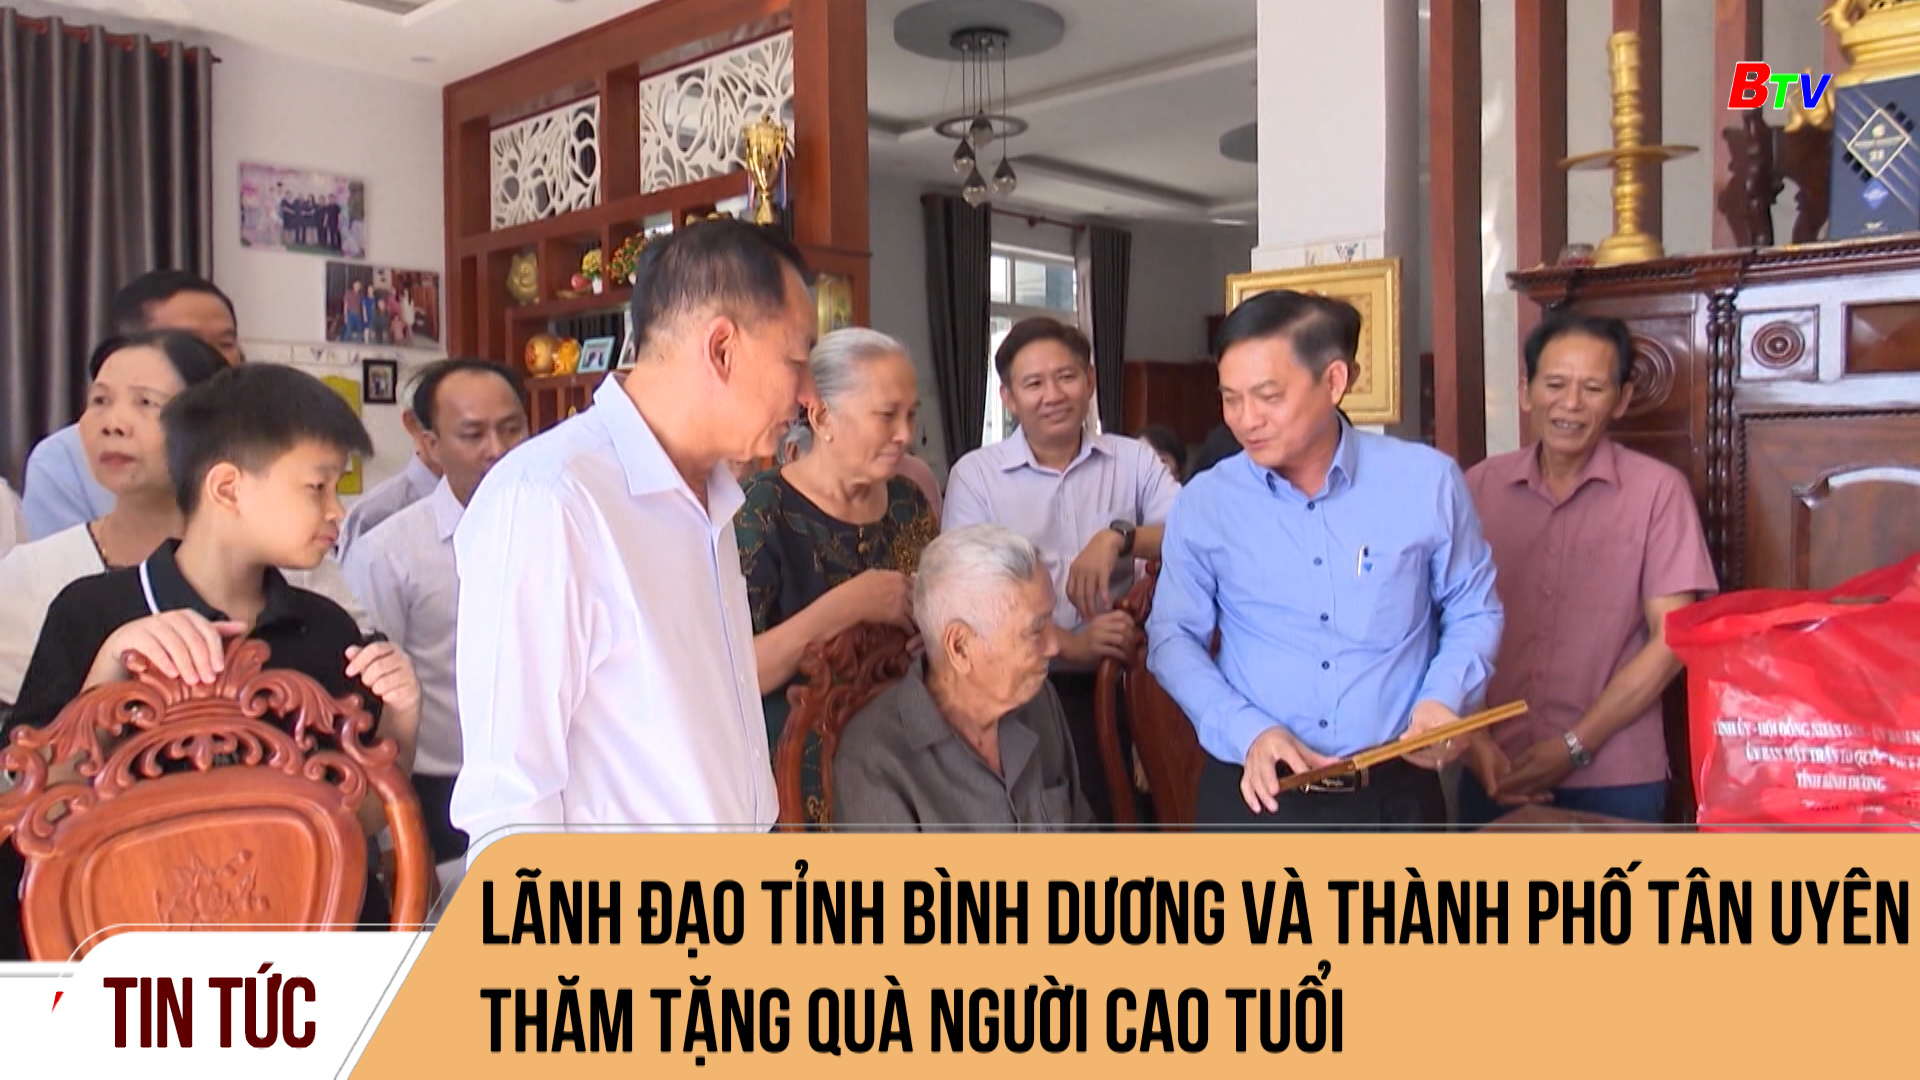 Lãnh đạo tỉnh Bình Dương và thành phố Tân Uyên thăm tặng quà người cao tuổi	